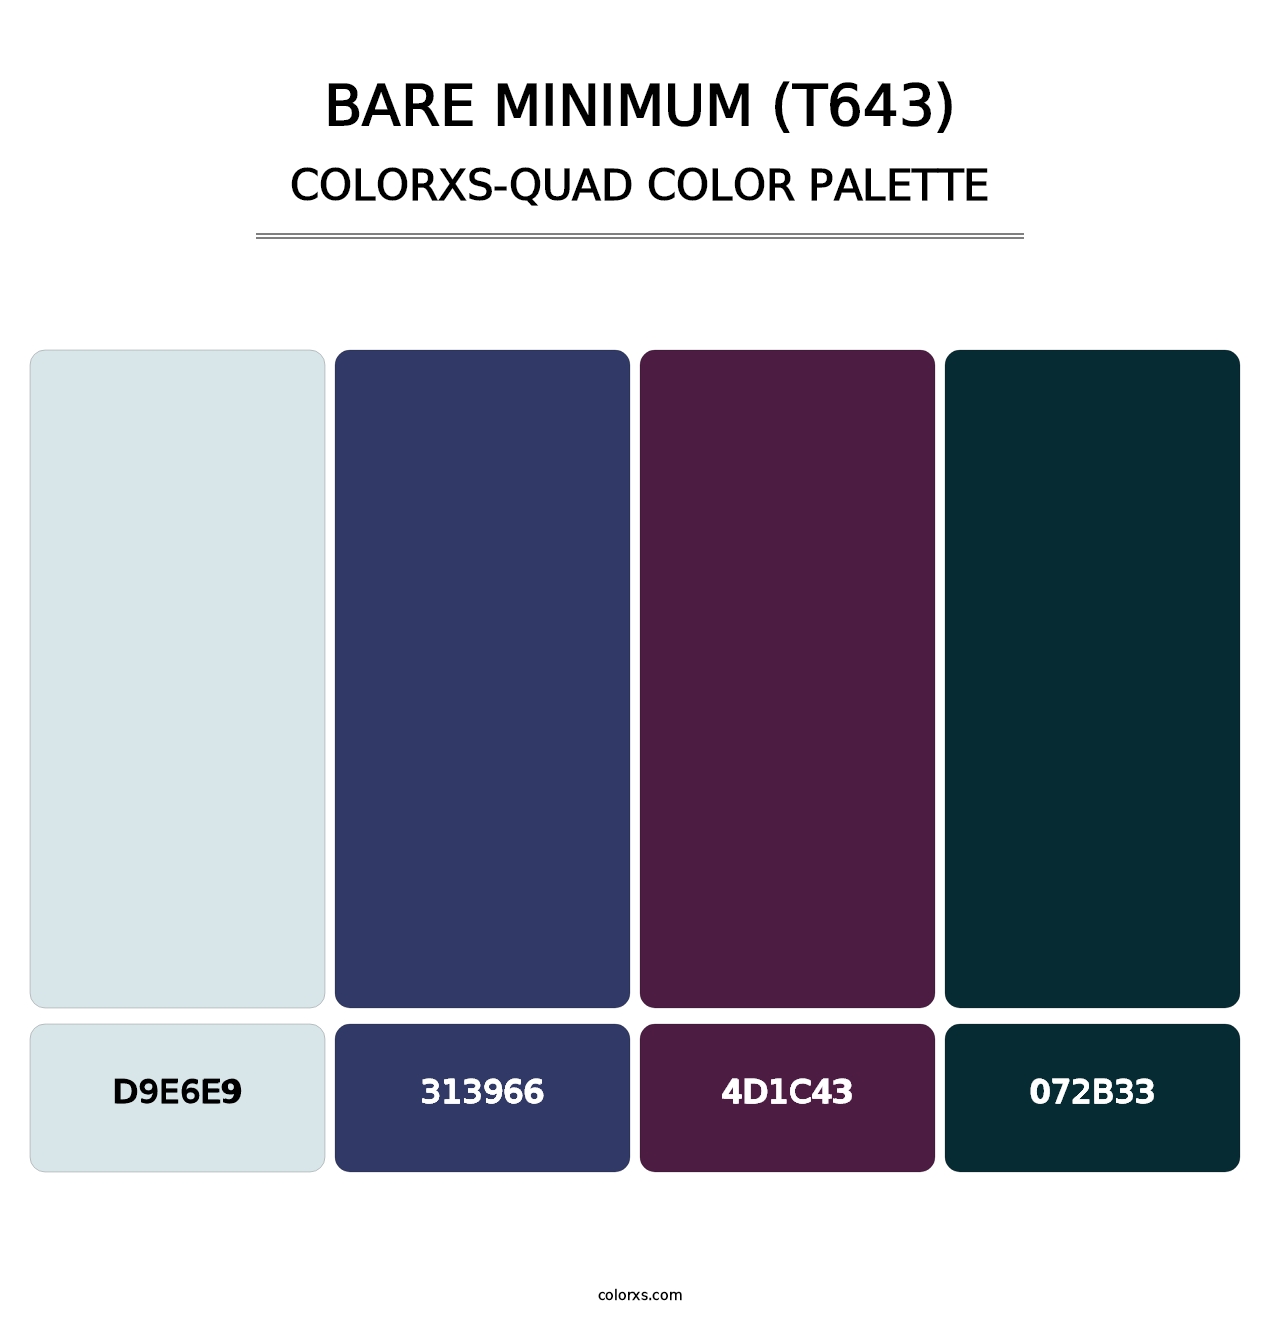 Bare Minimum (T643) - Colorxs Quad Palette